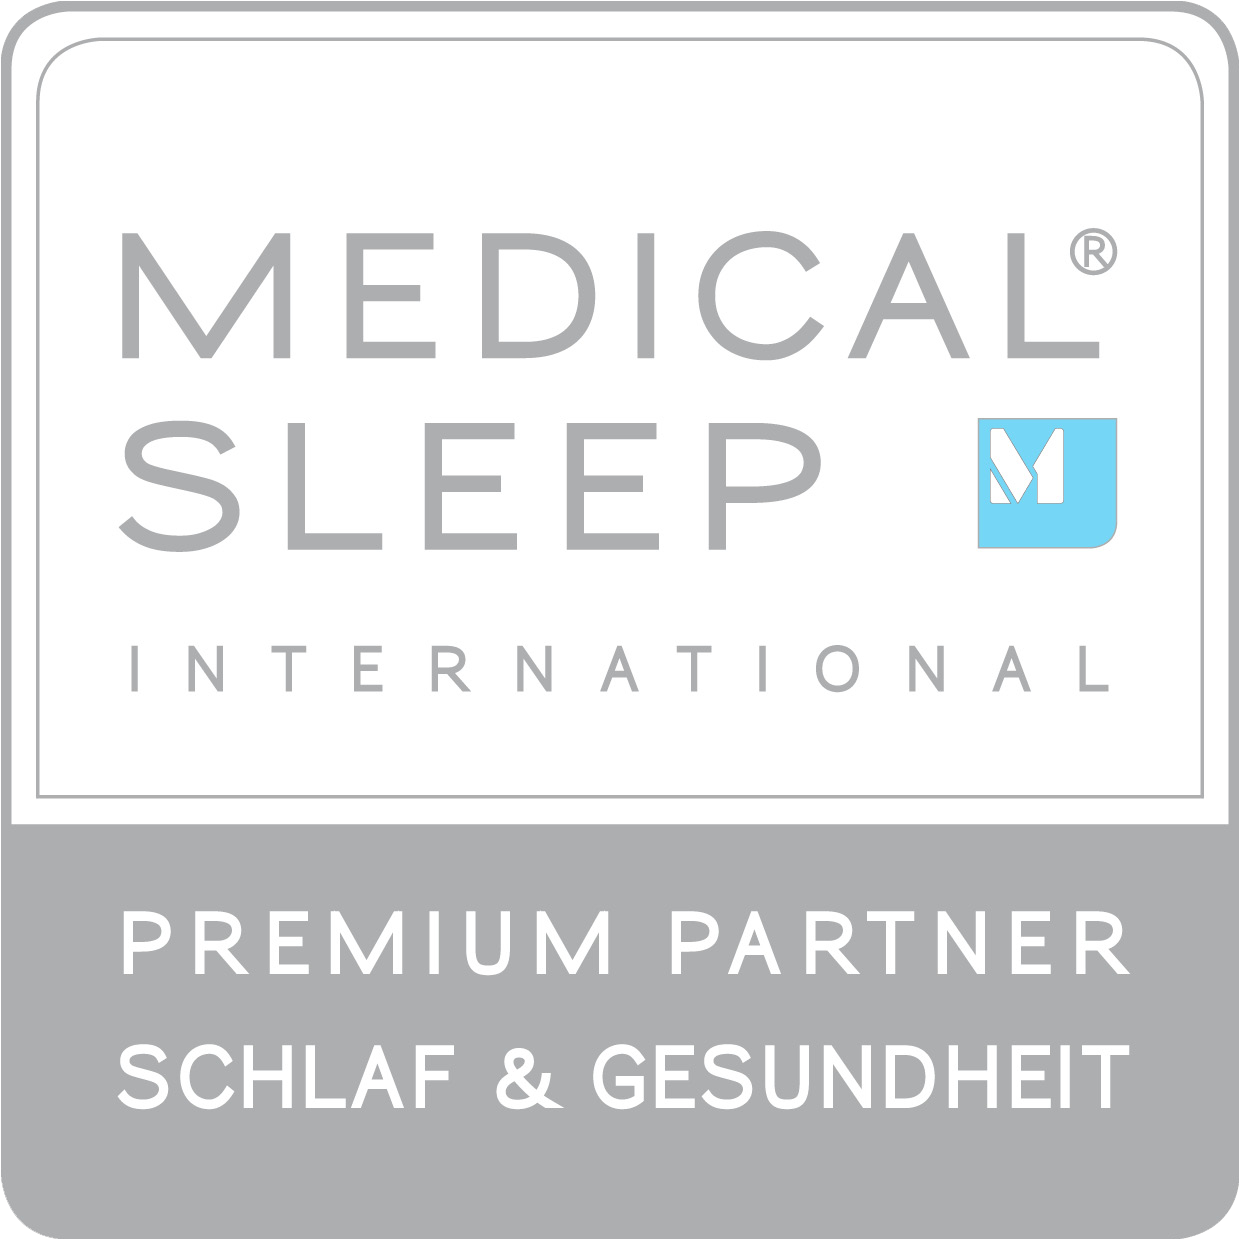 Traumwerk ist Ihr Medical Sleep zertifizierter Schlafberater in der Schweiz. Wir sind Ihr Premium Partner für den gesunden Schlaf!